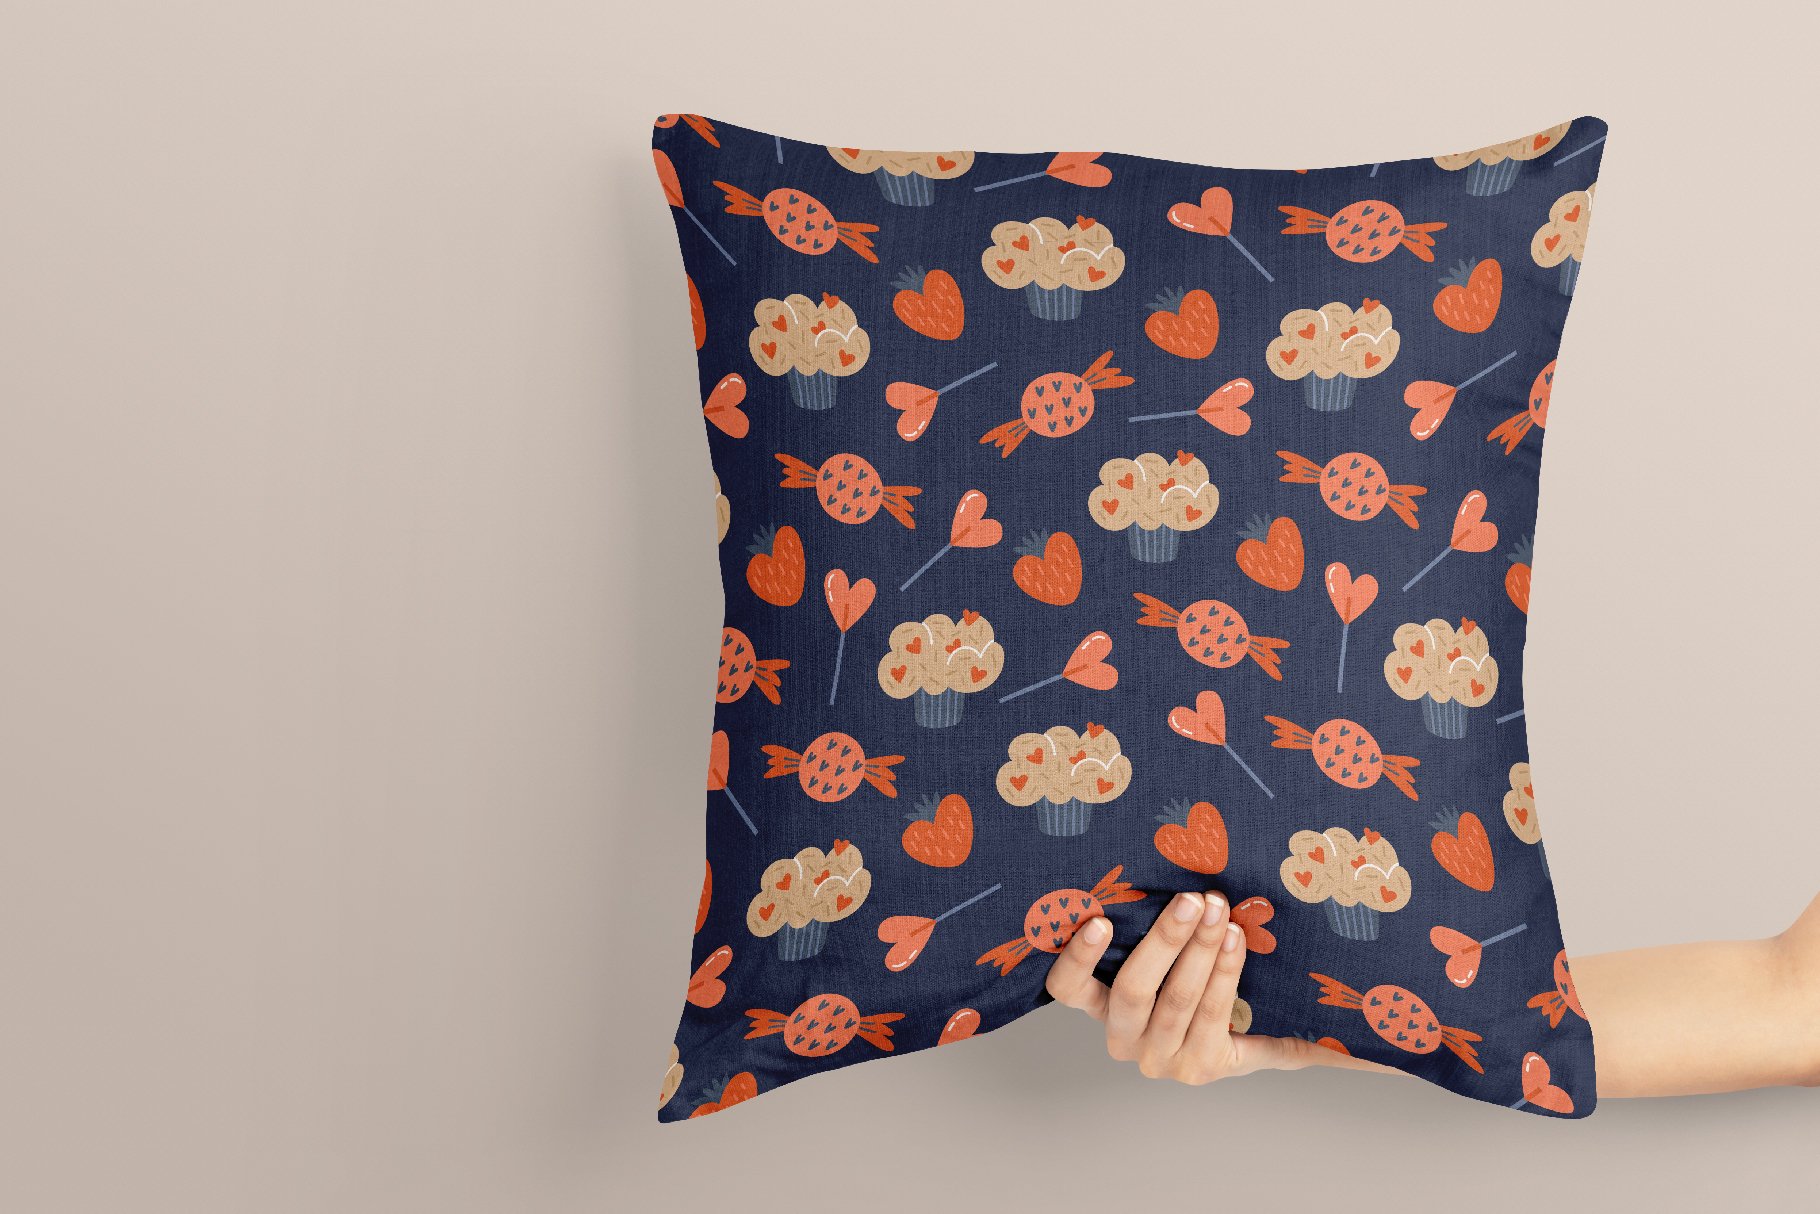 Themed pillow design.